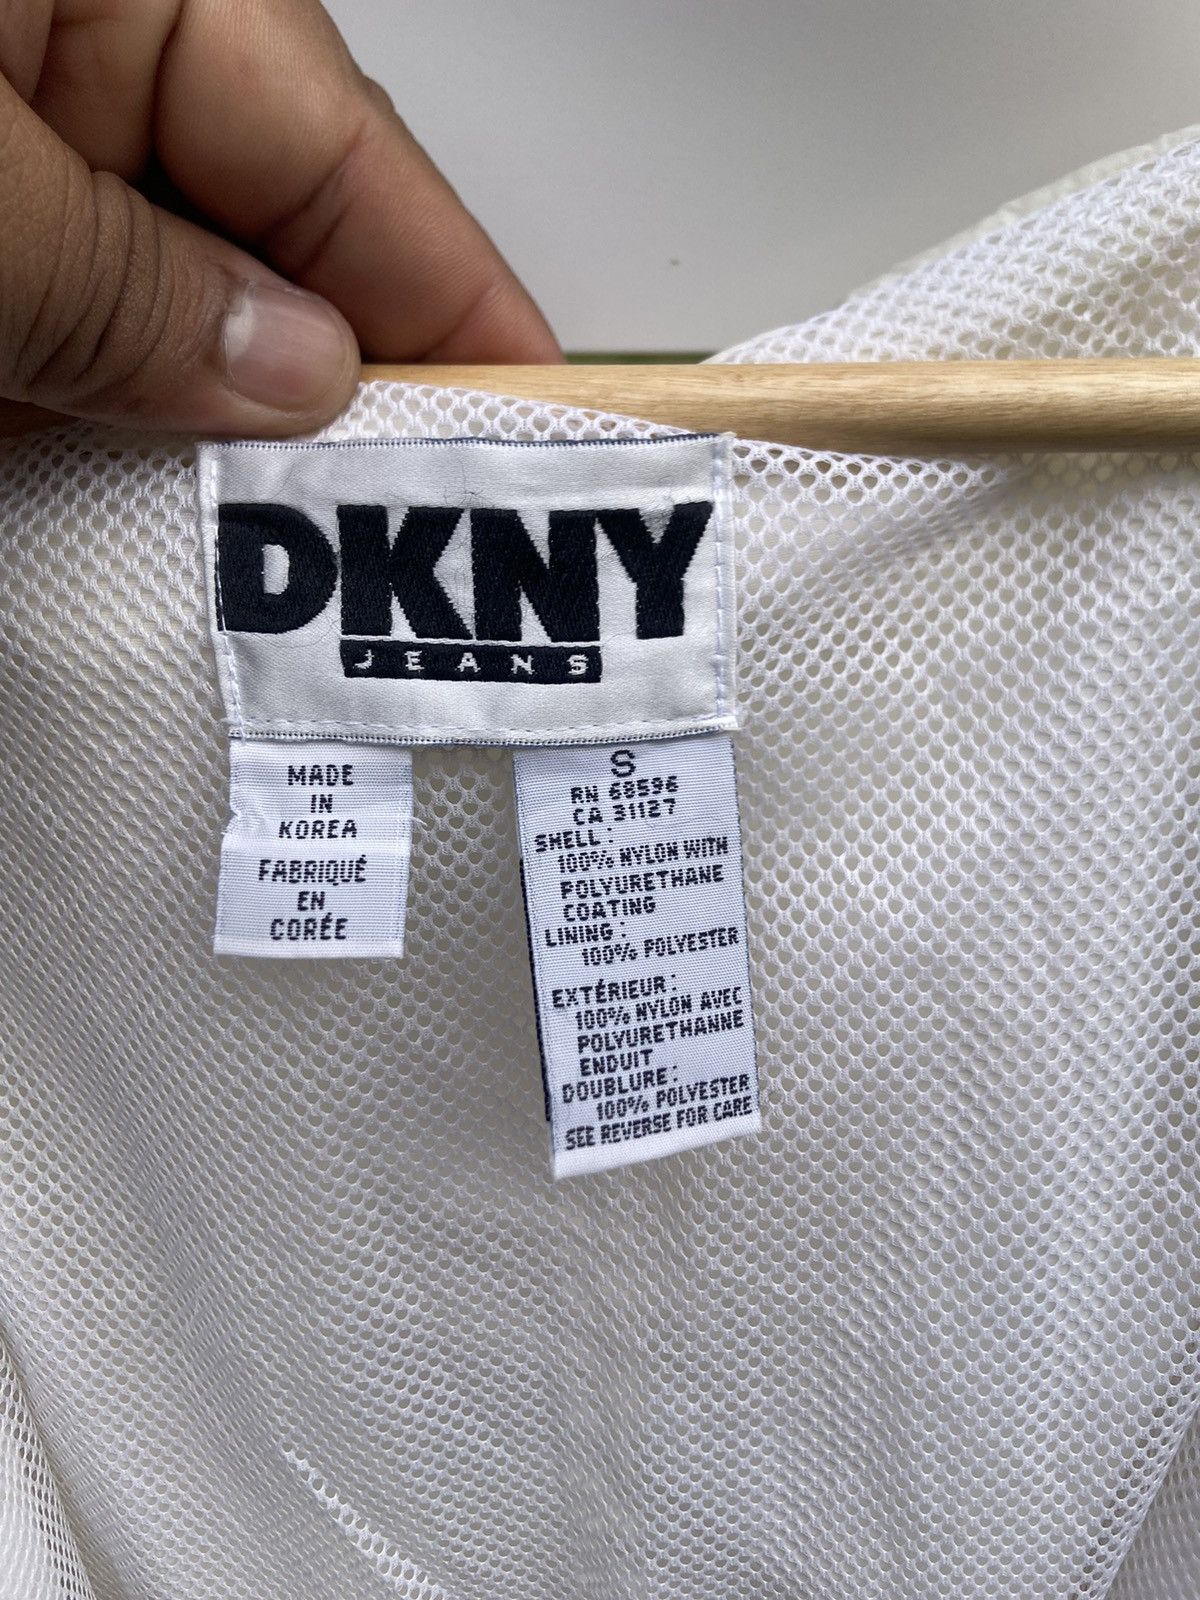 Outdoor Life Vintage DKNY USA Light Zipper Jacket Size US S / EU 44-46 / 1 - 13 Thumbnail